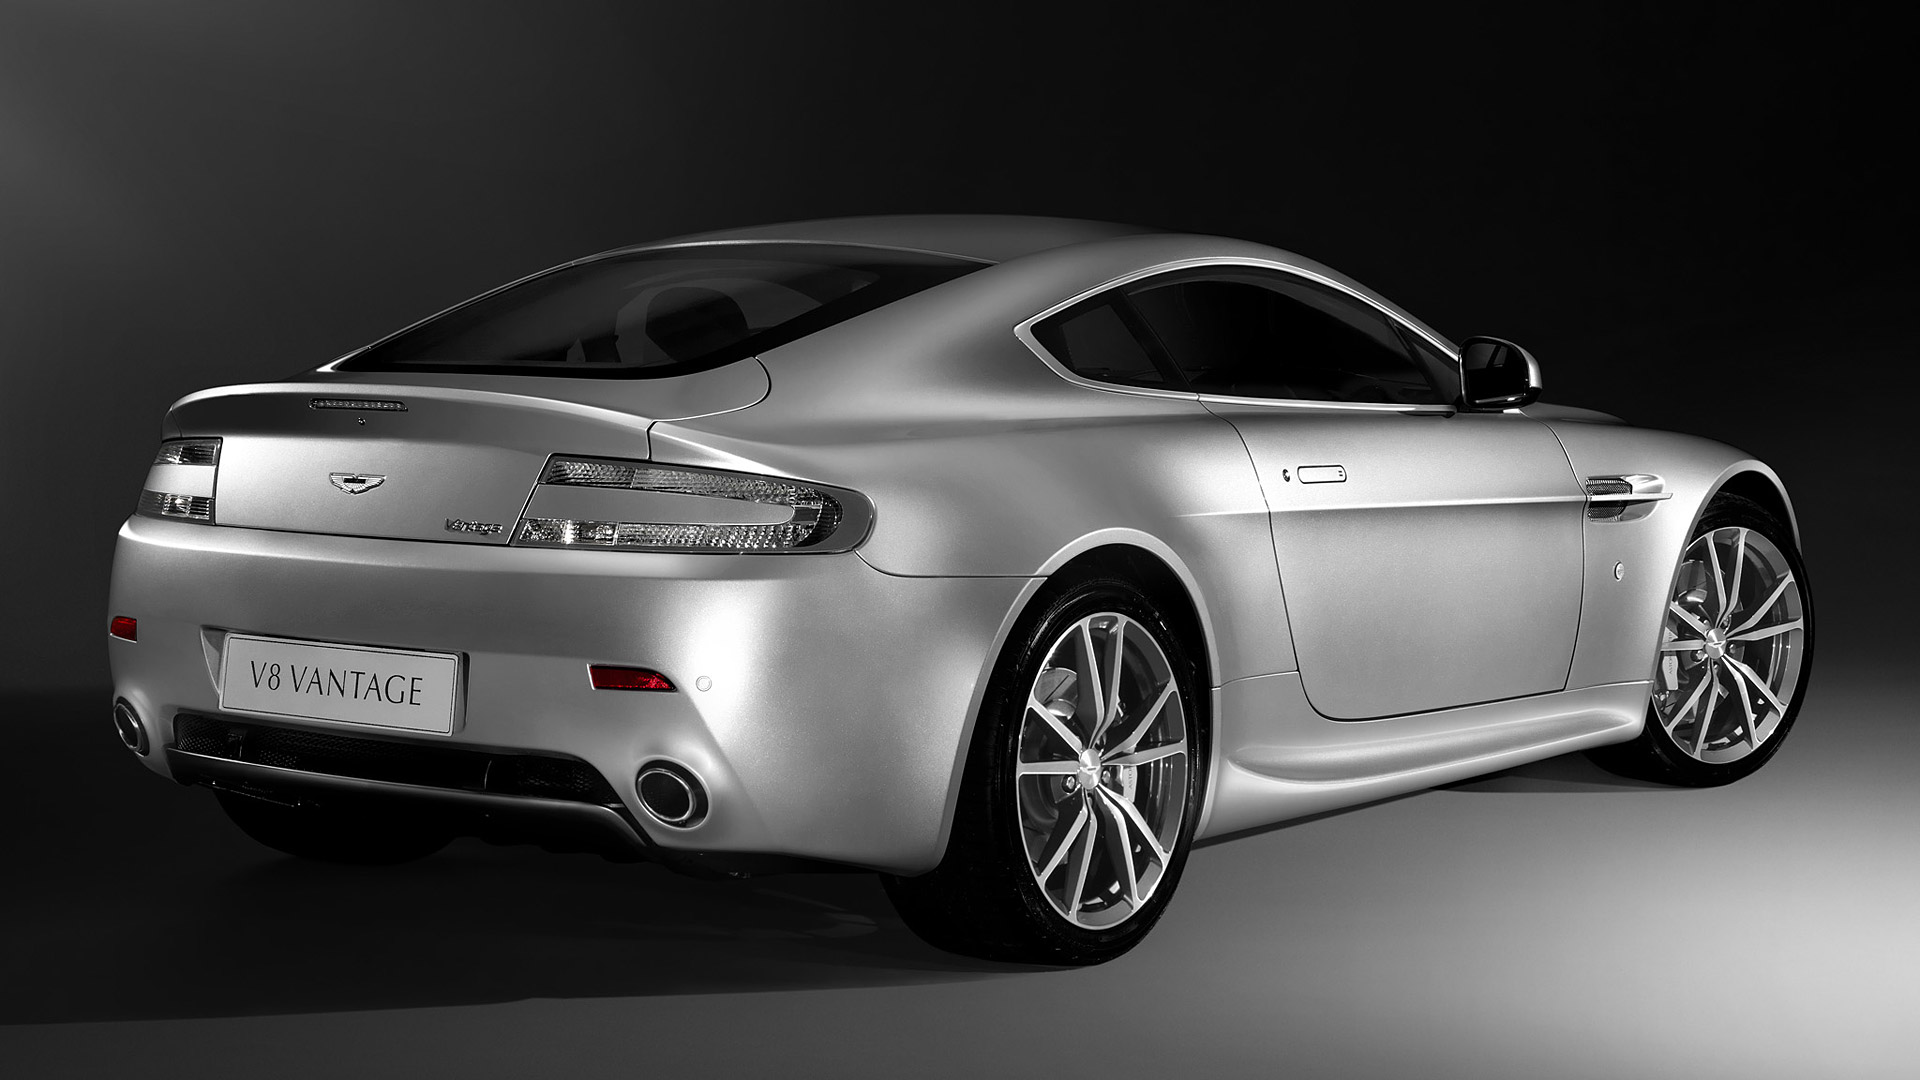  2010 Aston Martin V8 Vantage Wallpaper.